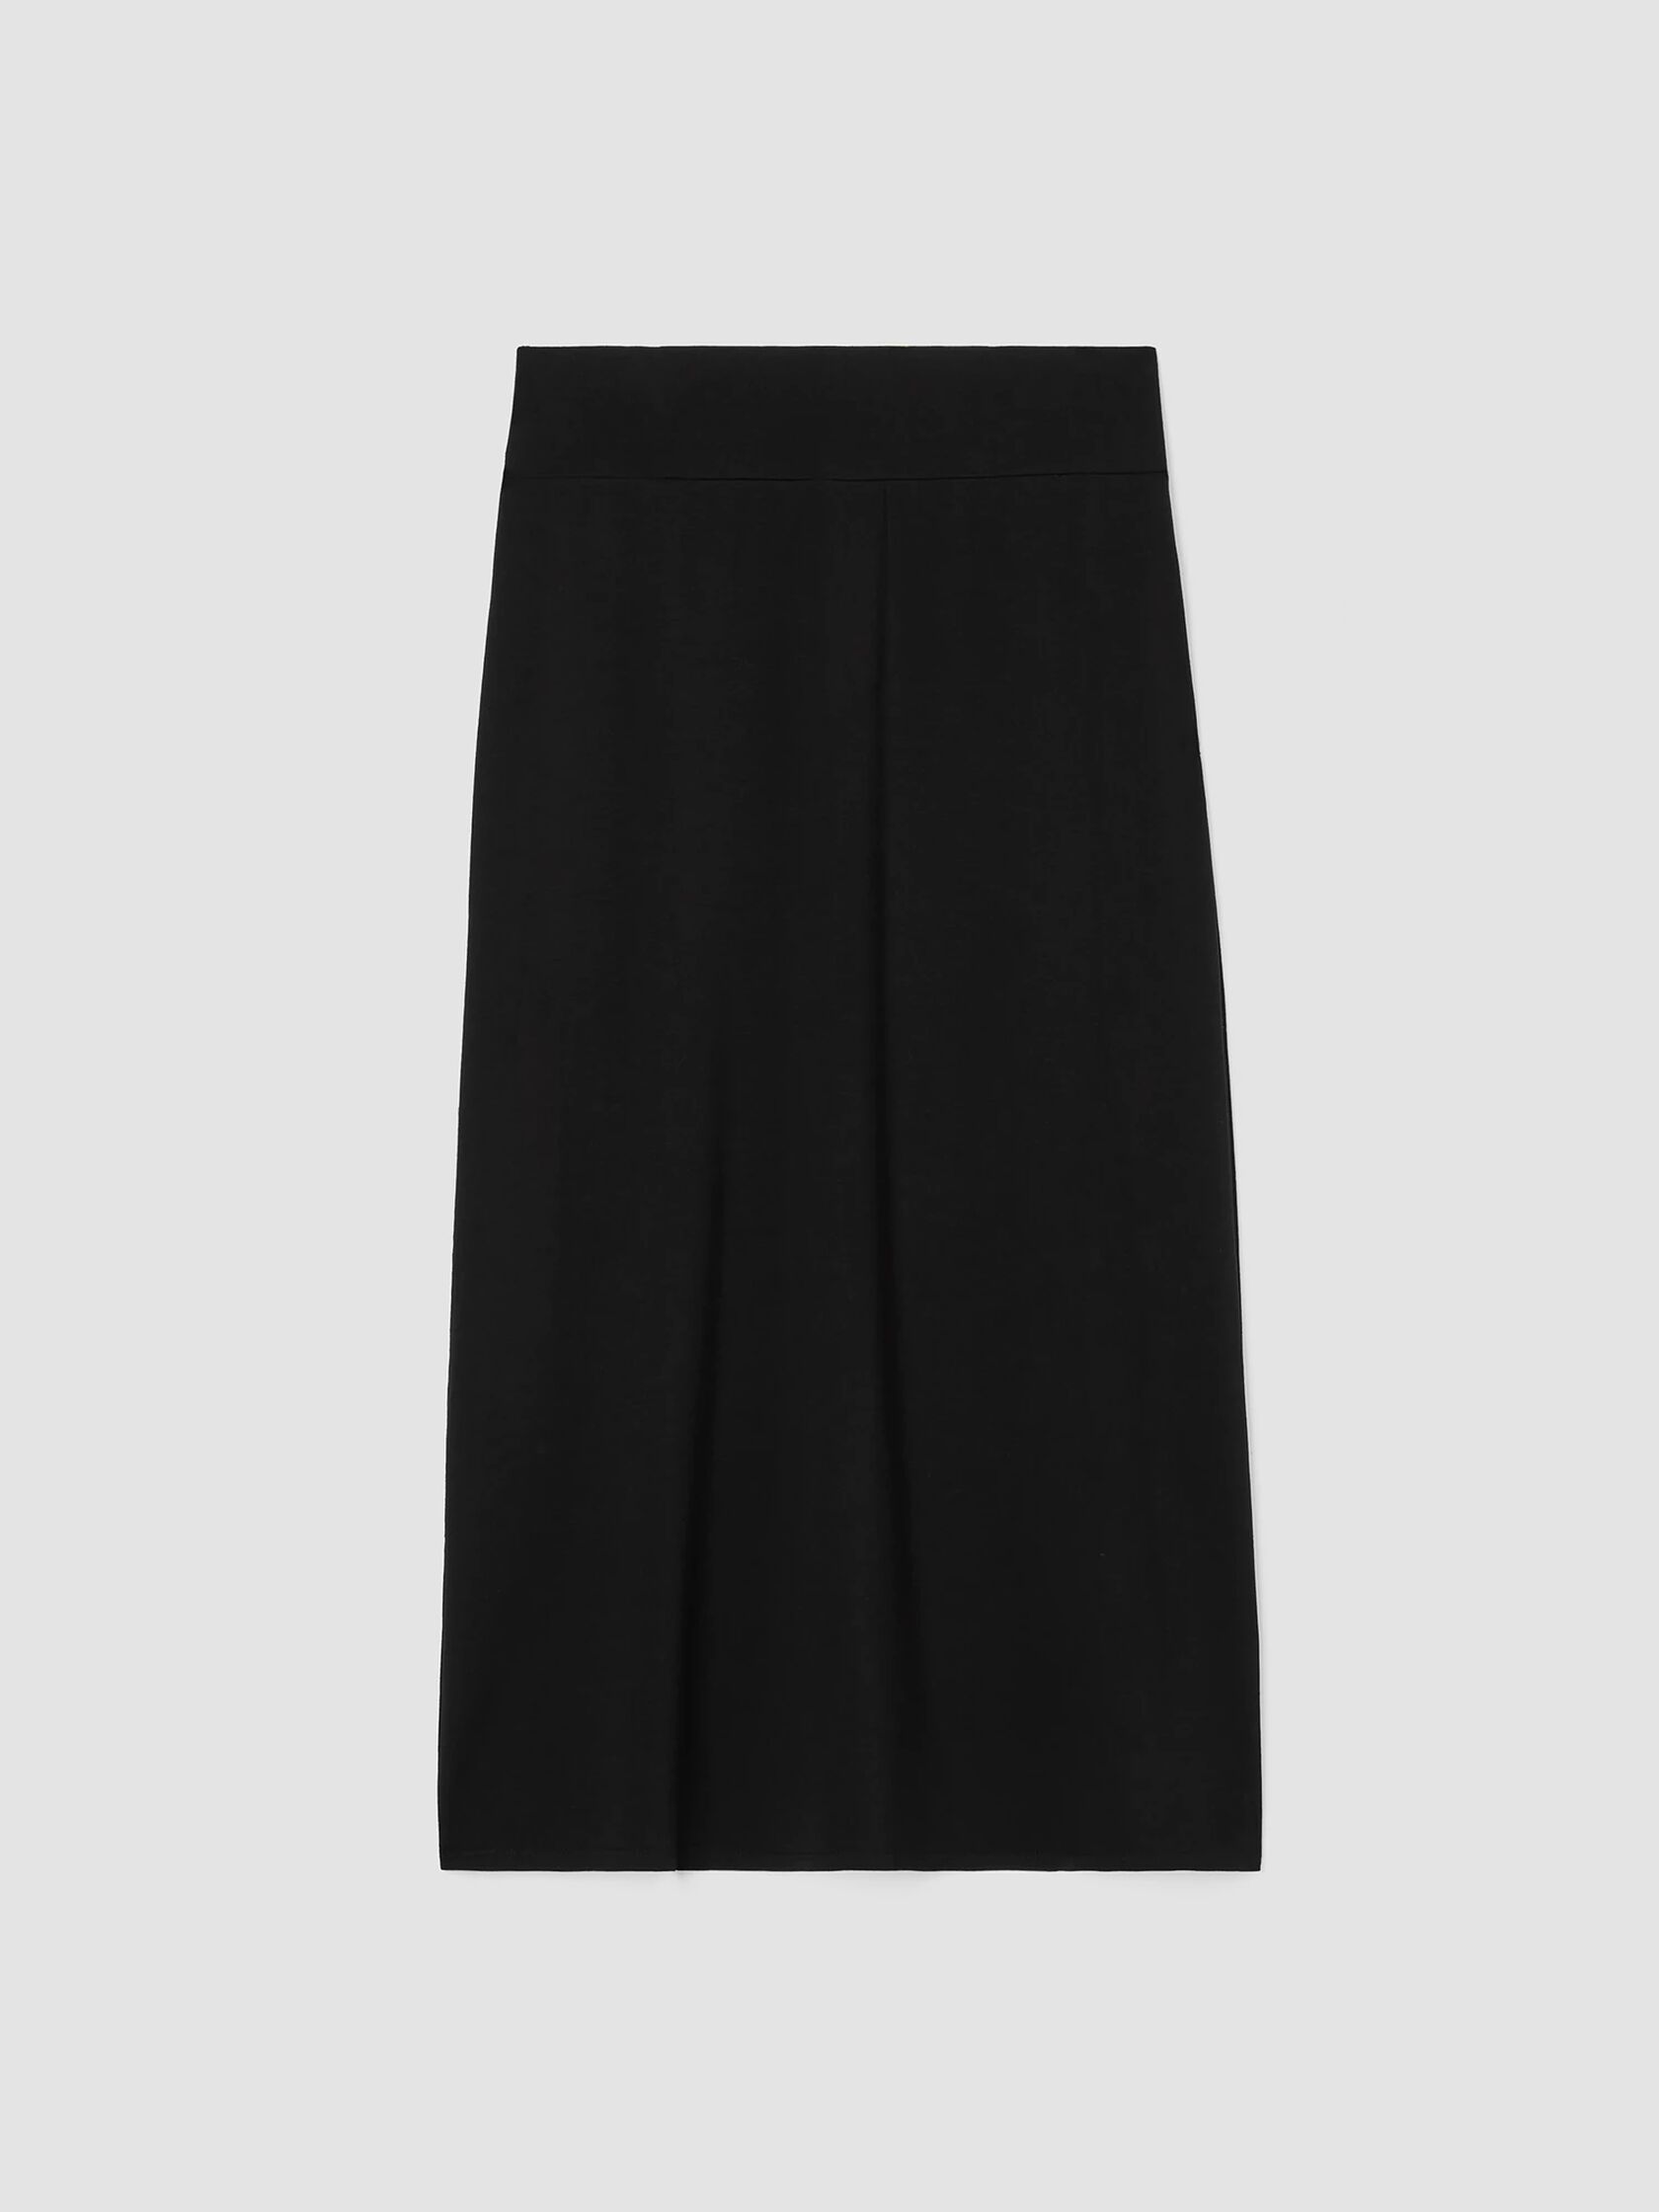 Stretch Jersey Knit A-Line Skirt